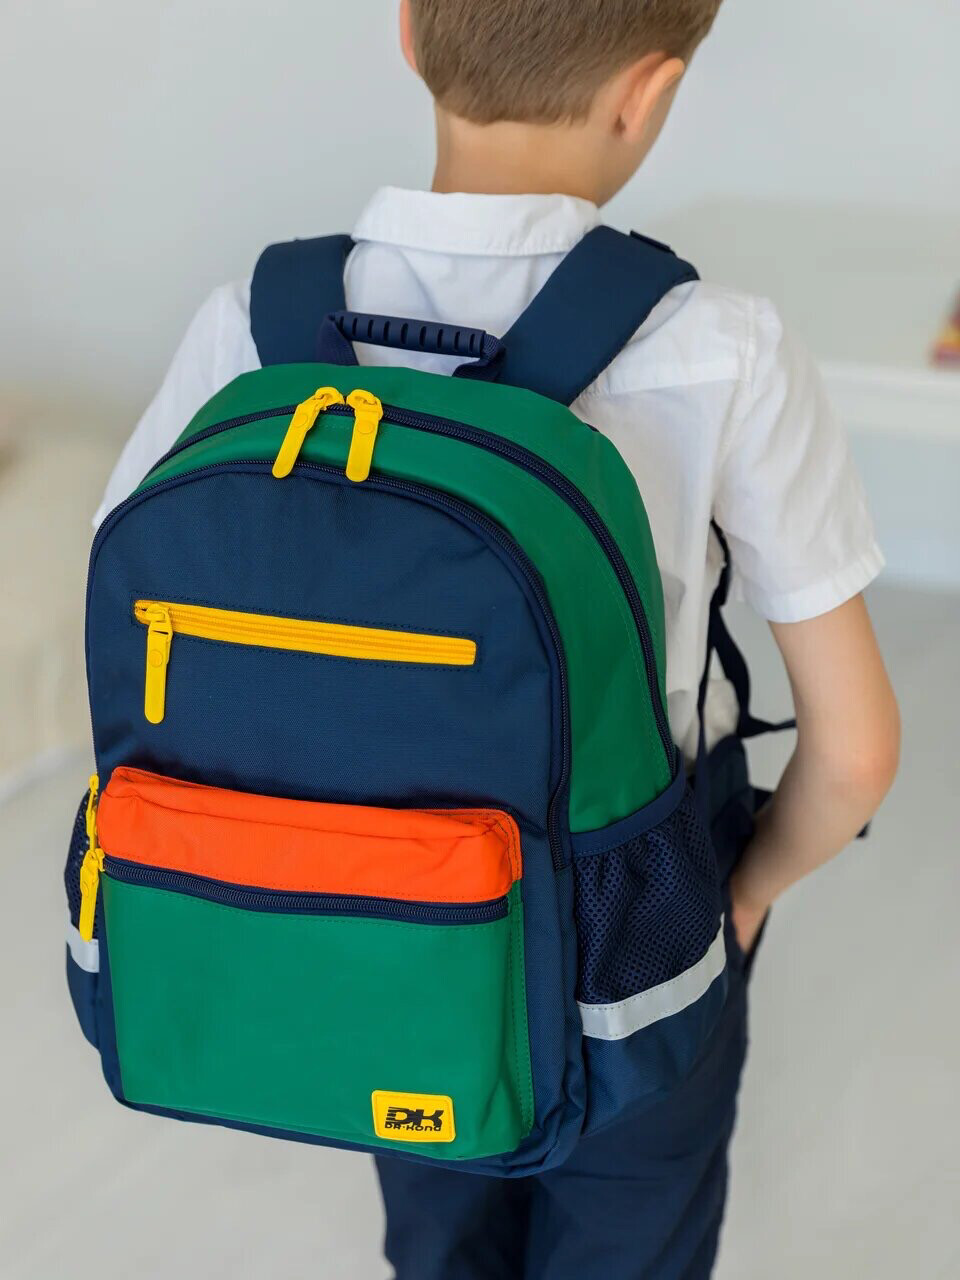 Школьный рюкзак DR.KONG Z 1140 для мальчиков на рост 110-130 см